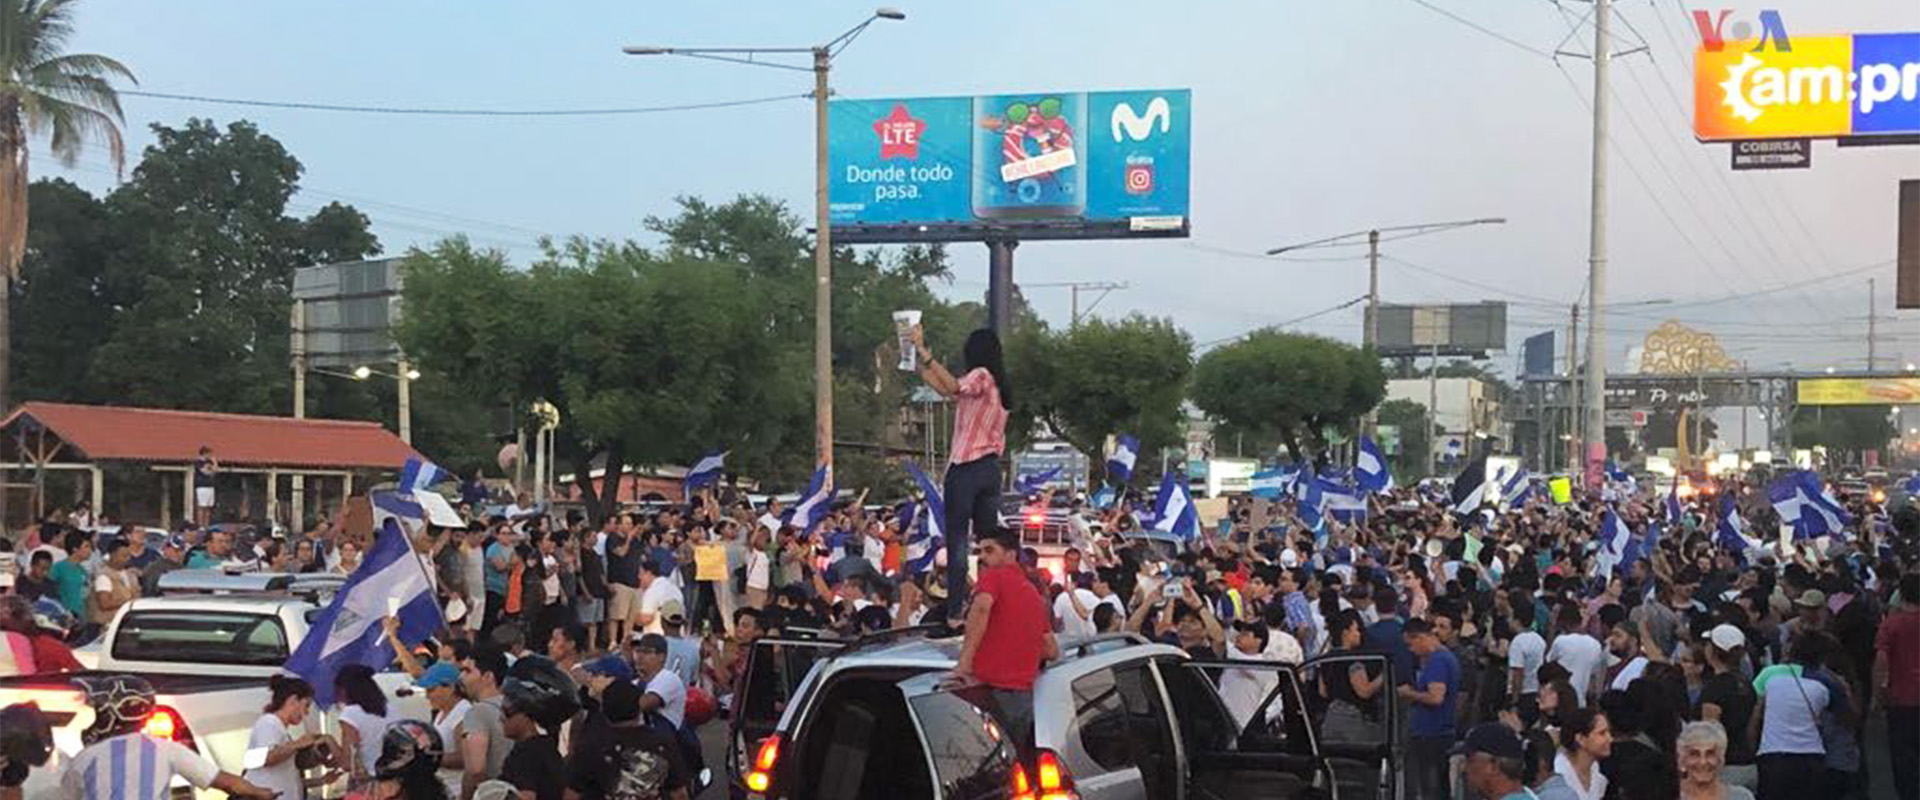 Proteste Managua Nicaragua Mani Tese 2018 (2)